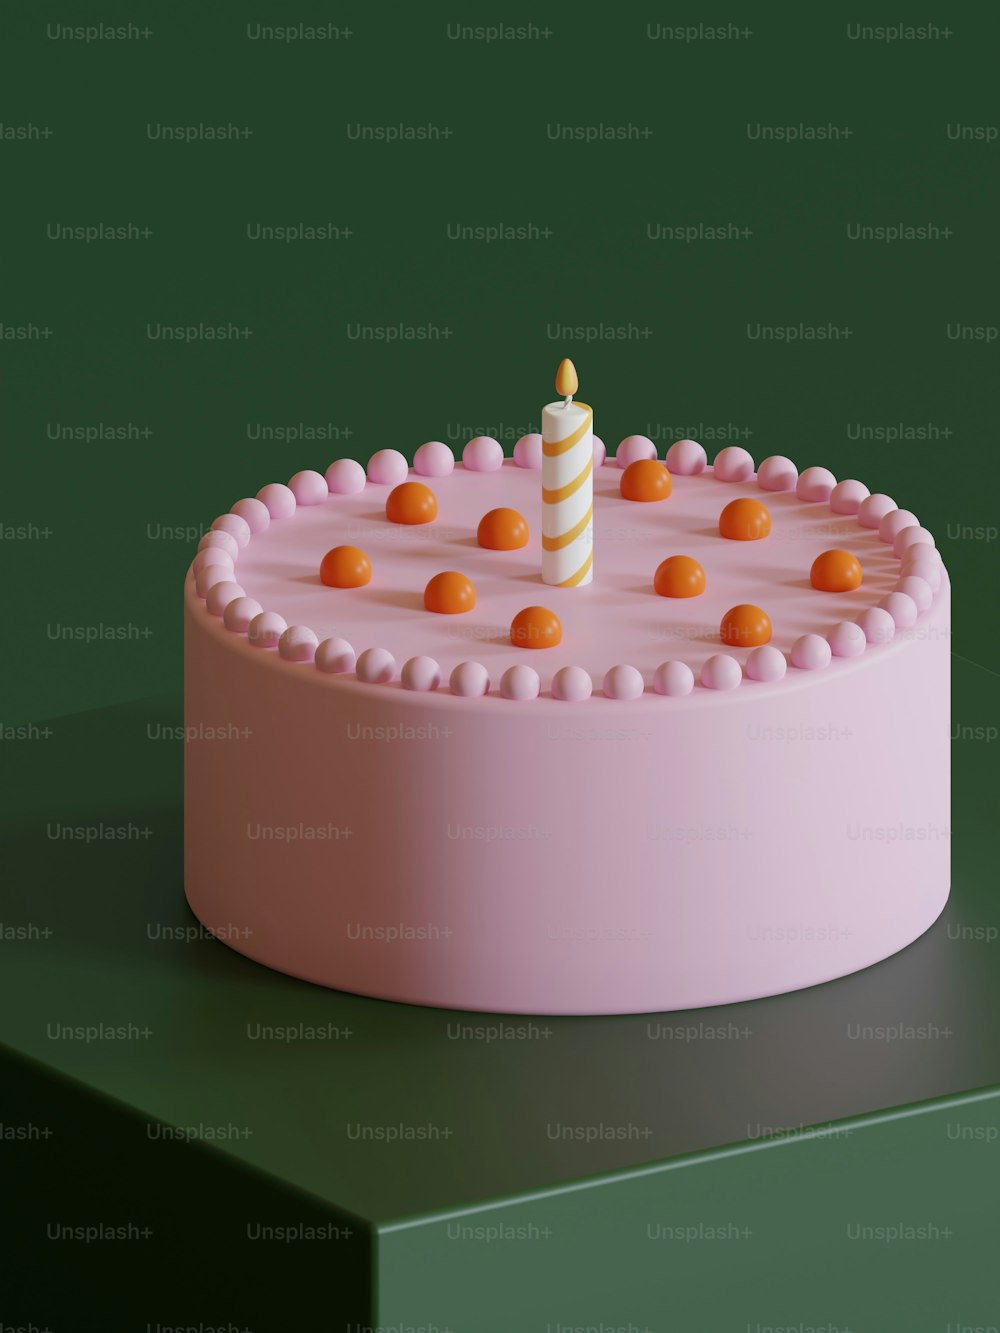 Un pastel rosa con una sola vela encima